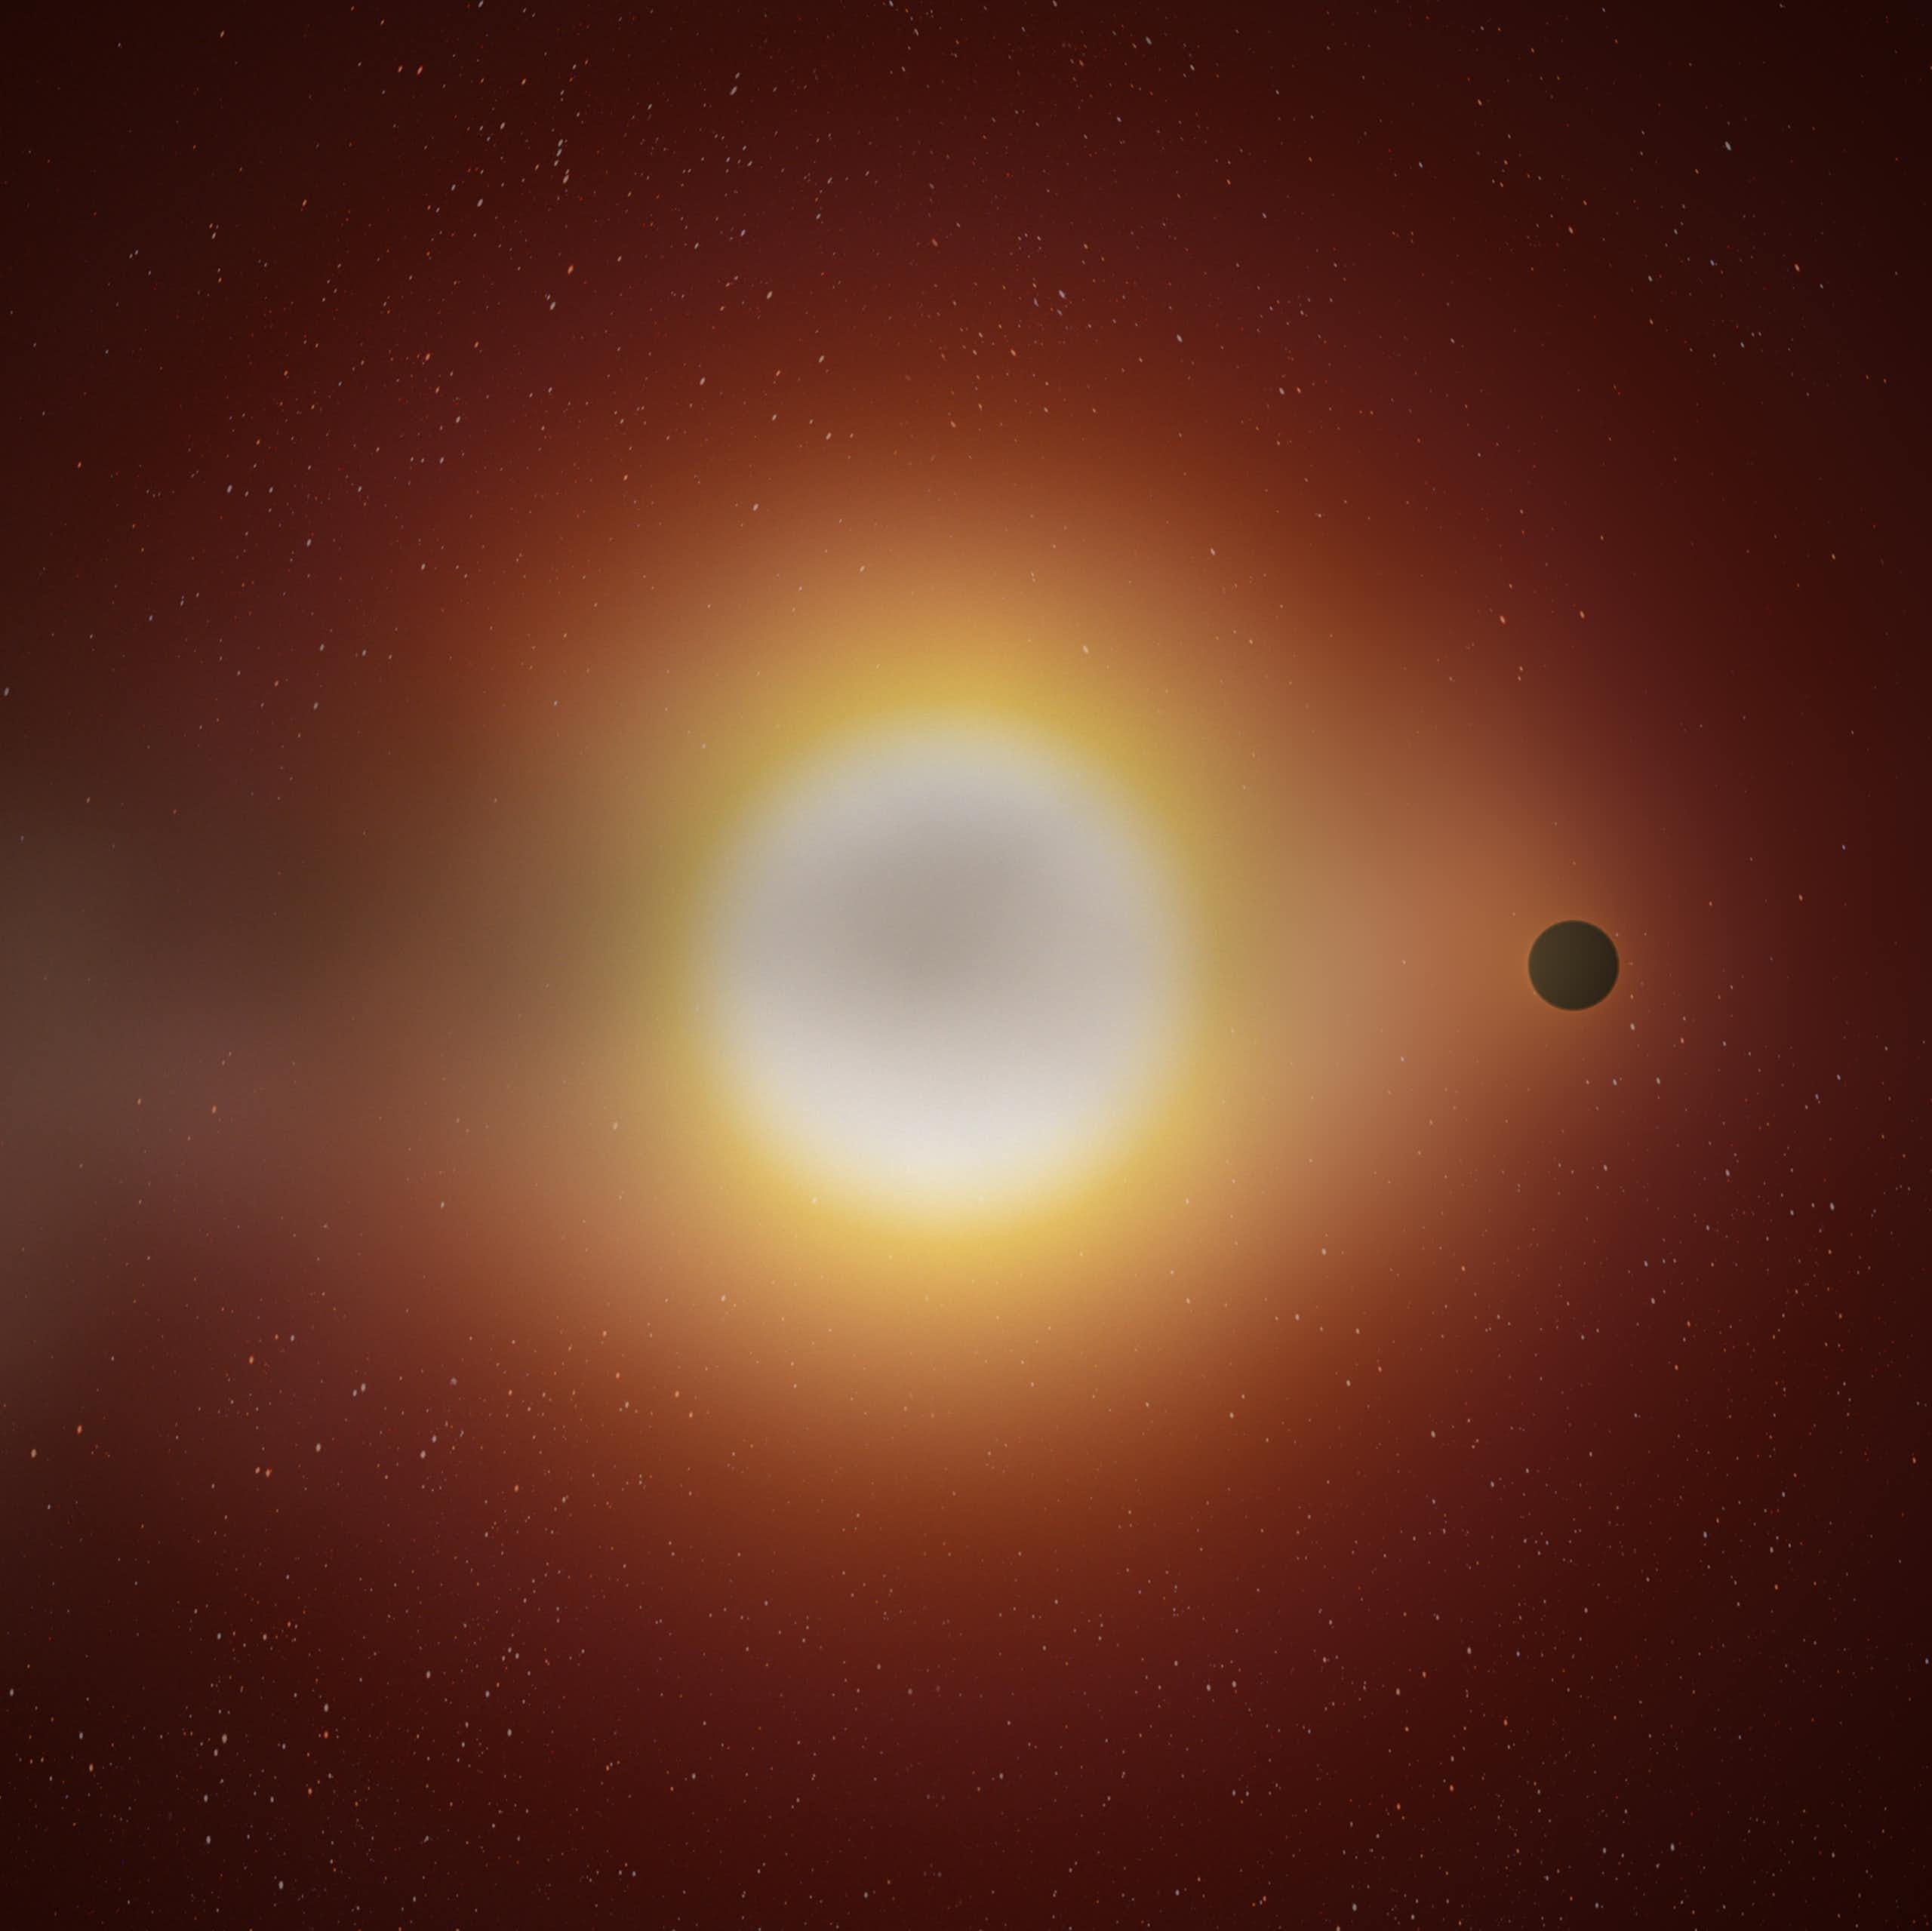 Exoplaneta com cauda como de um cometa ajuda na compreensão sobre formação de planetas no nosso Universo